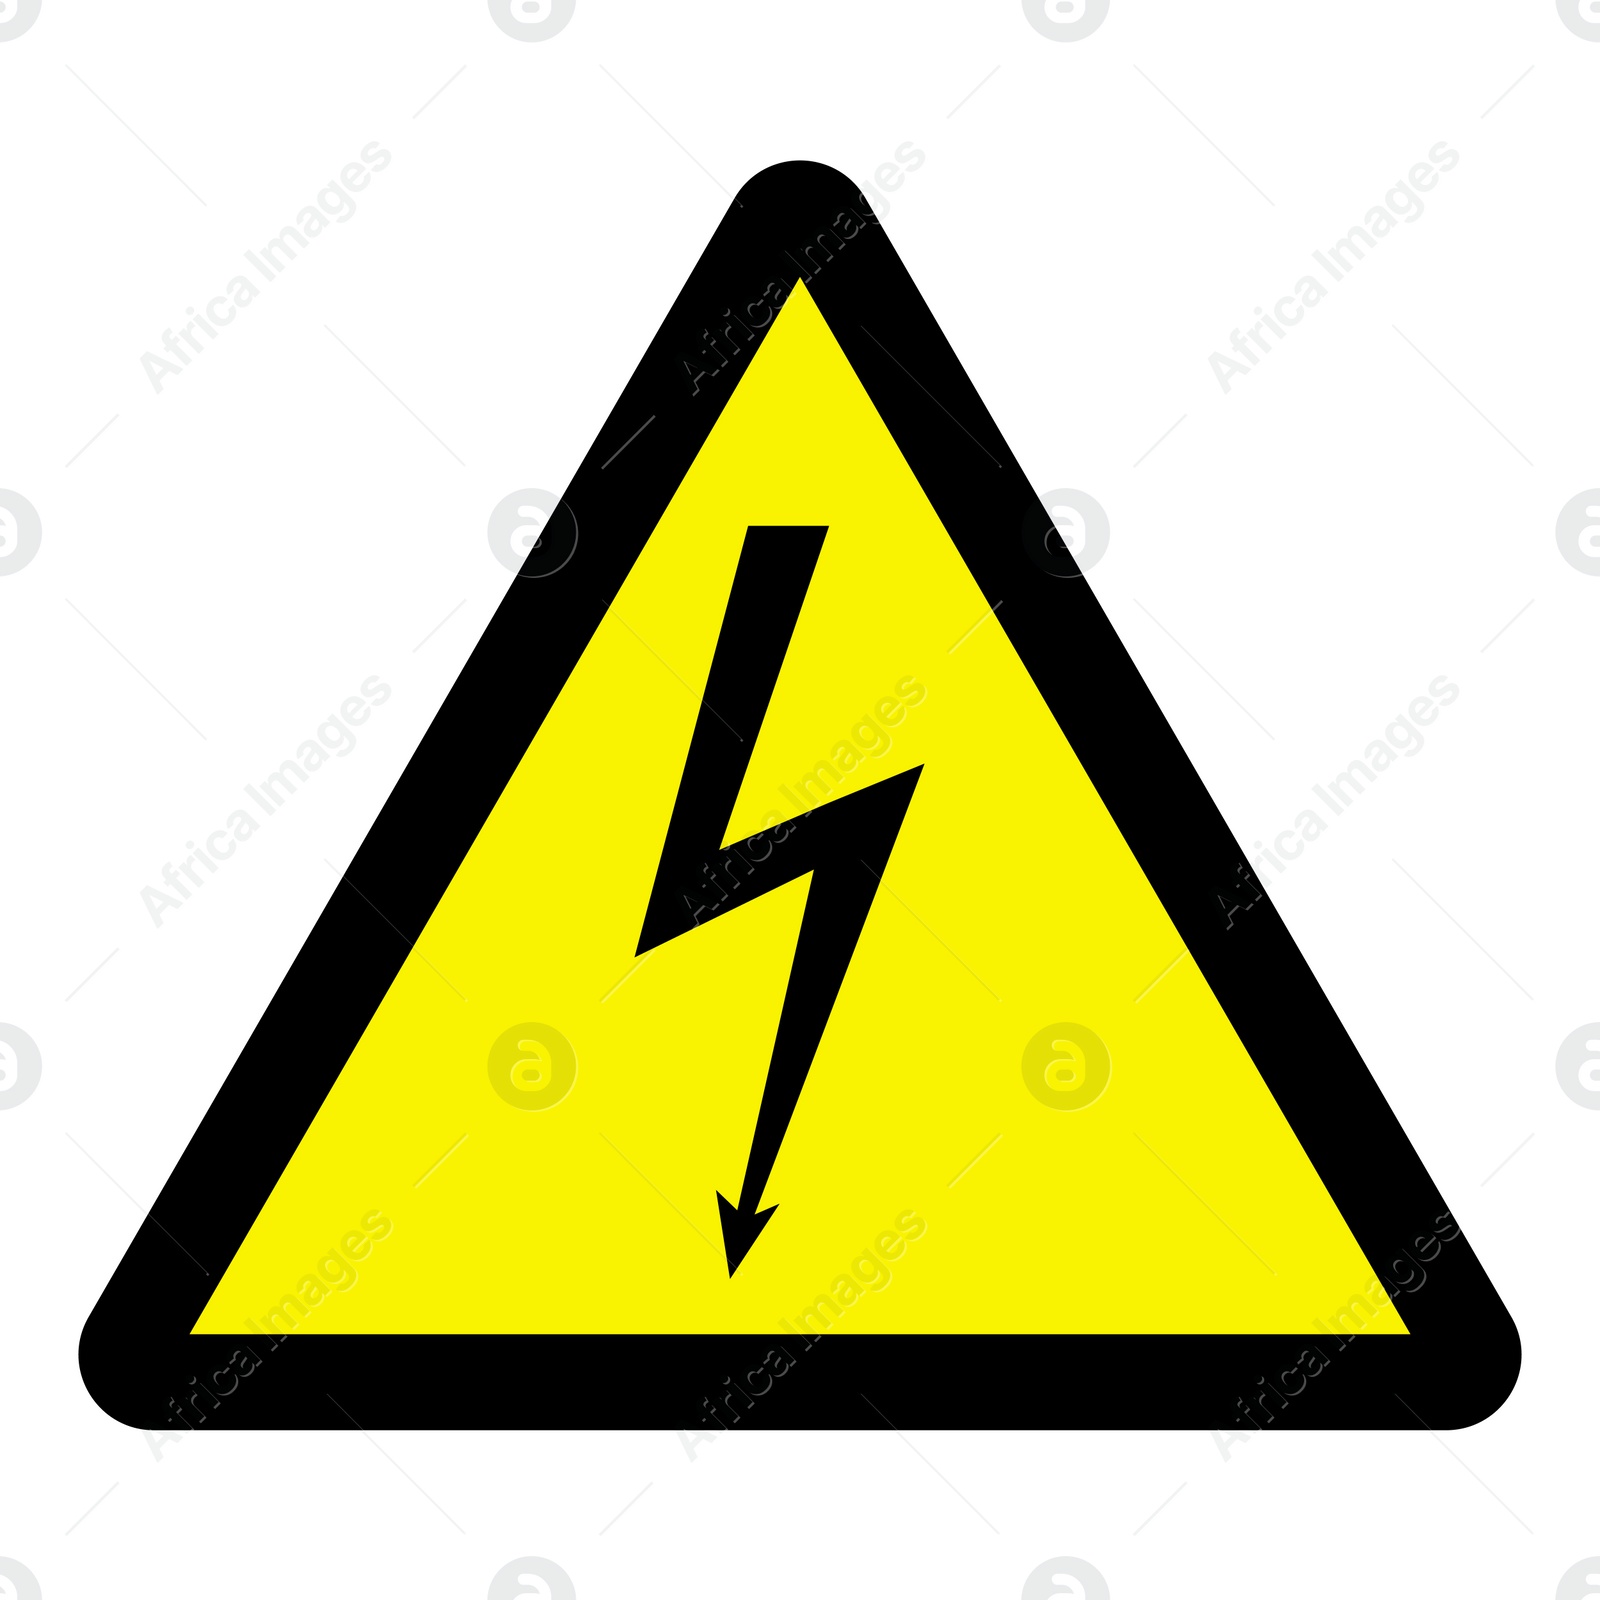 Image of International Maritime Organization (IMO) sign, illustration. Electric shock symbol